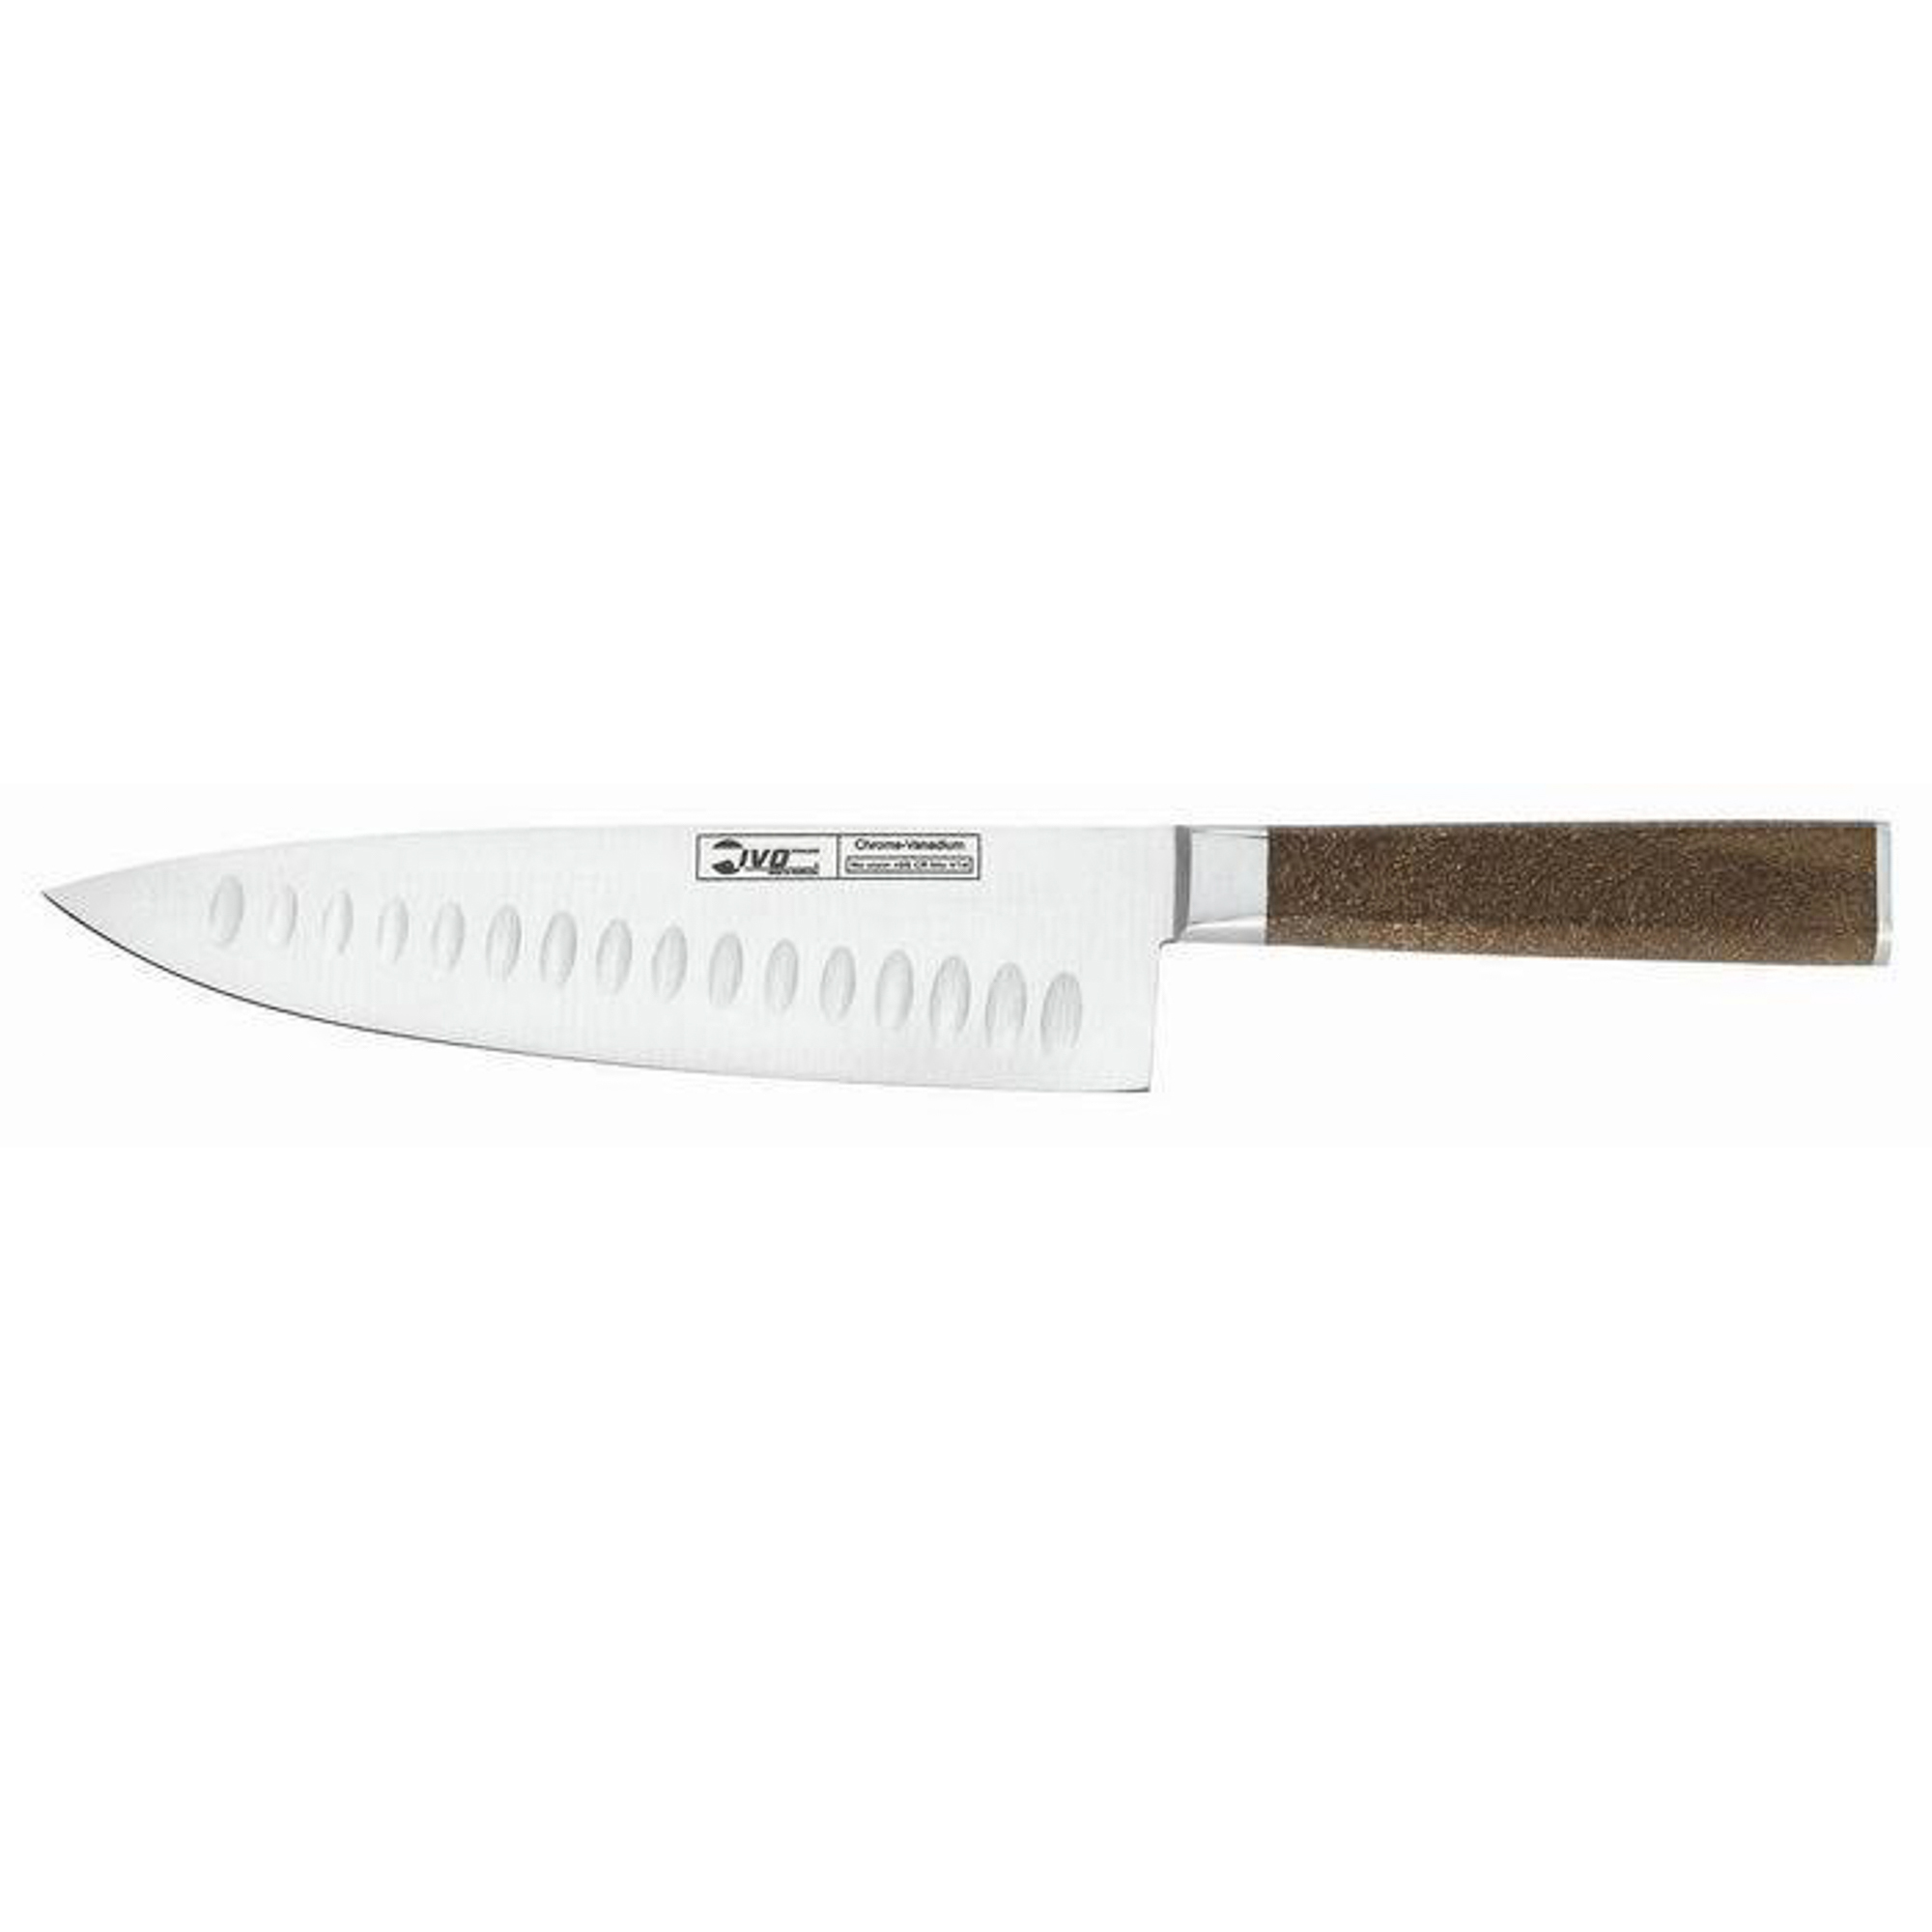 Нож поварской Ivo 33439.20 с канавками 20см нож для хлеба 20см virtu black ivo